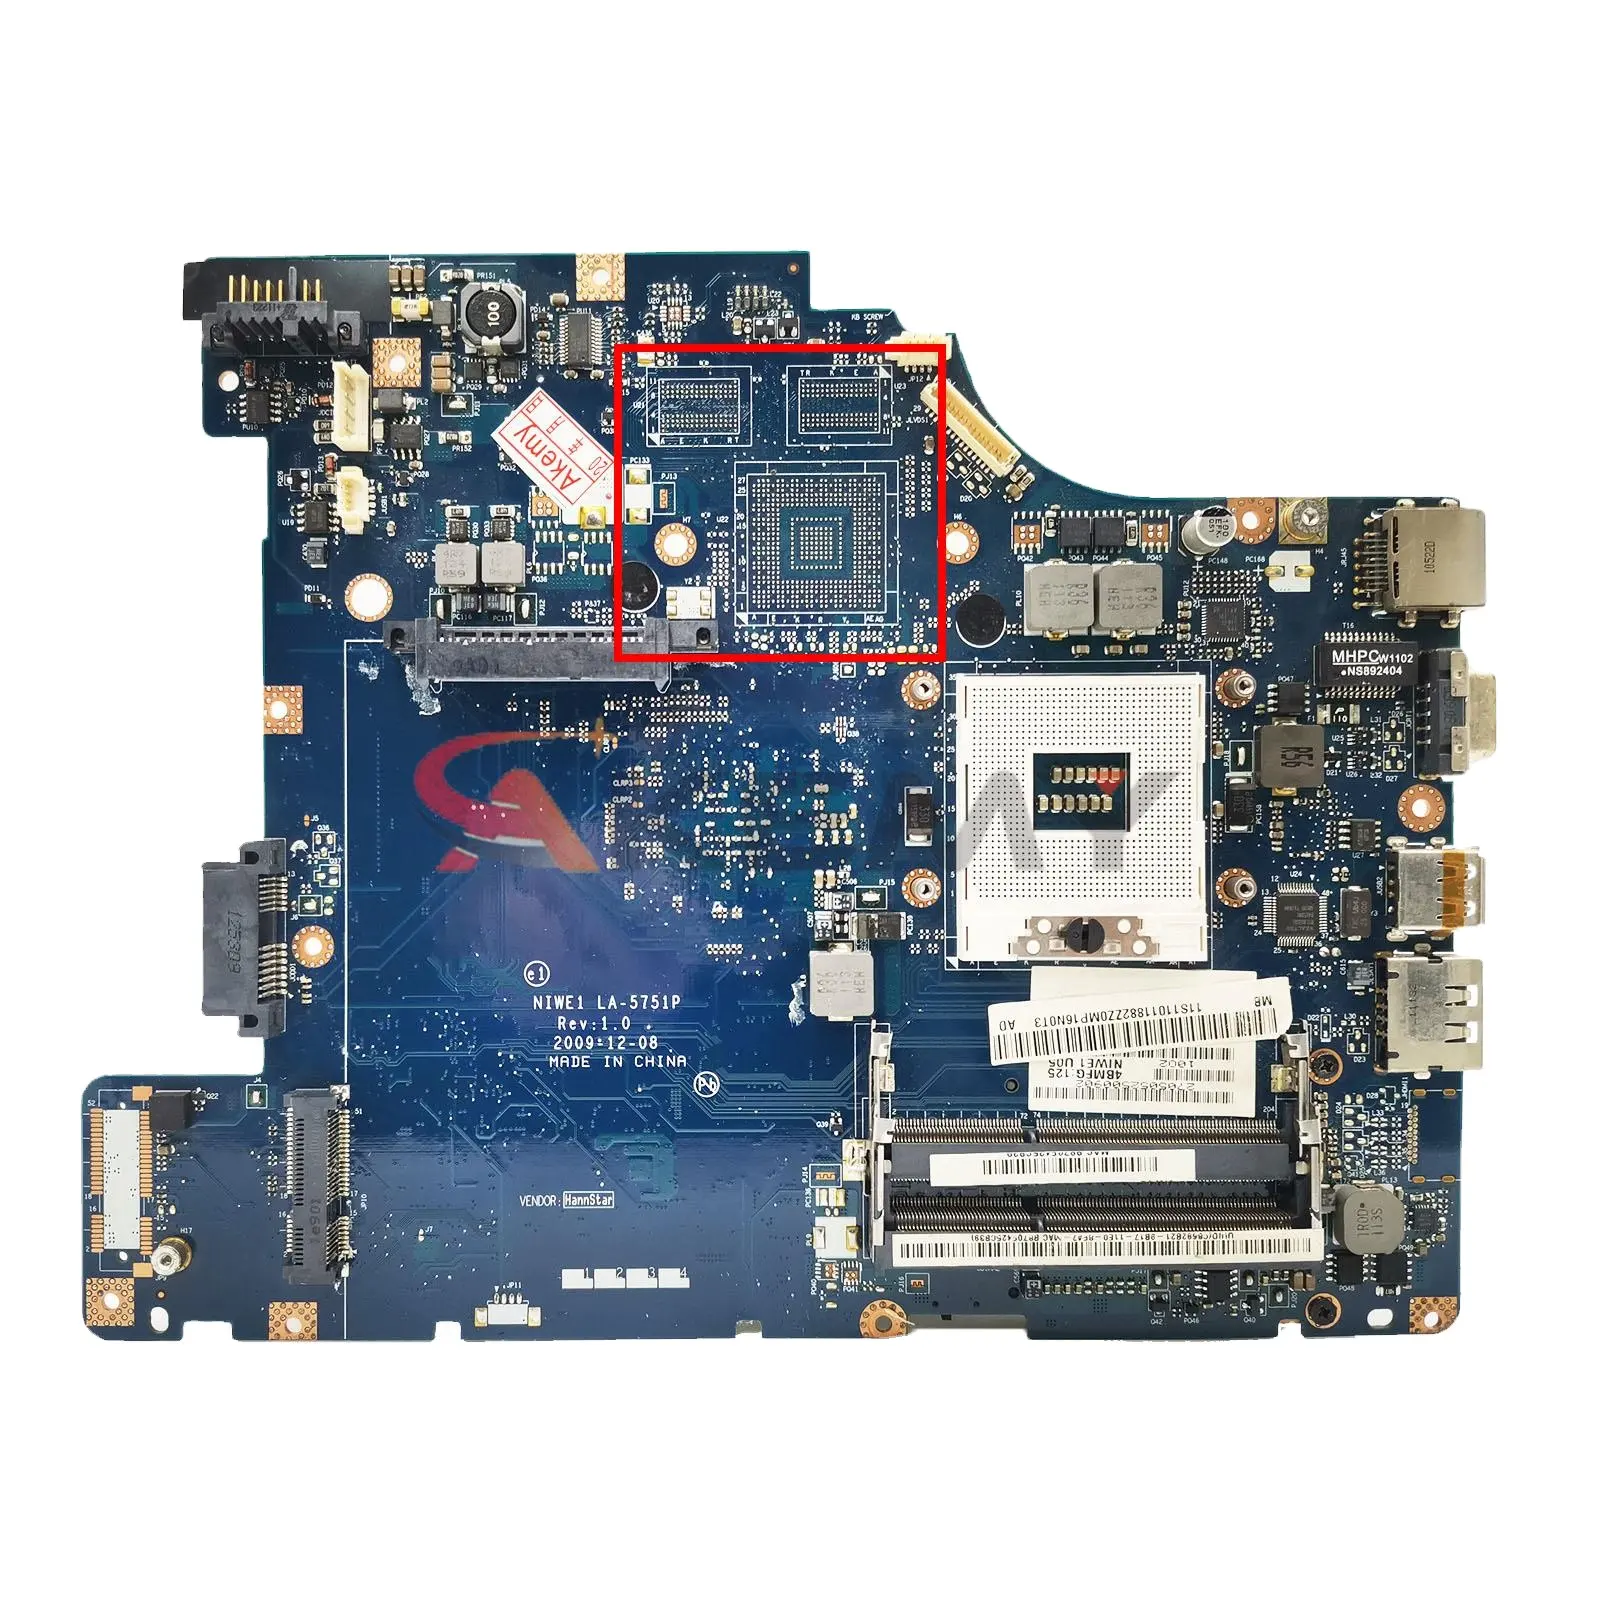 Niwe1 LA-5751P ban đầu cho Lenovo G460 Z460 máy tính xách tay bo mạch chủ G460 Z460 Mainboard LA-5751P slgzs hm55 DDR3 100% teste